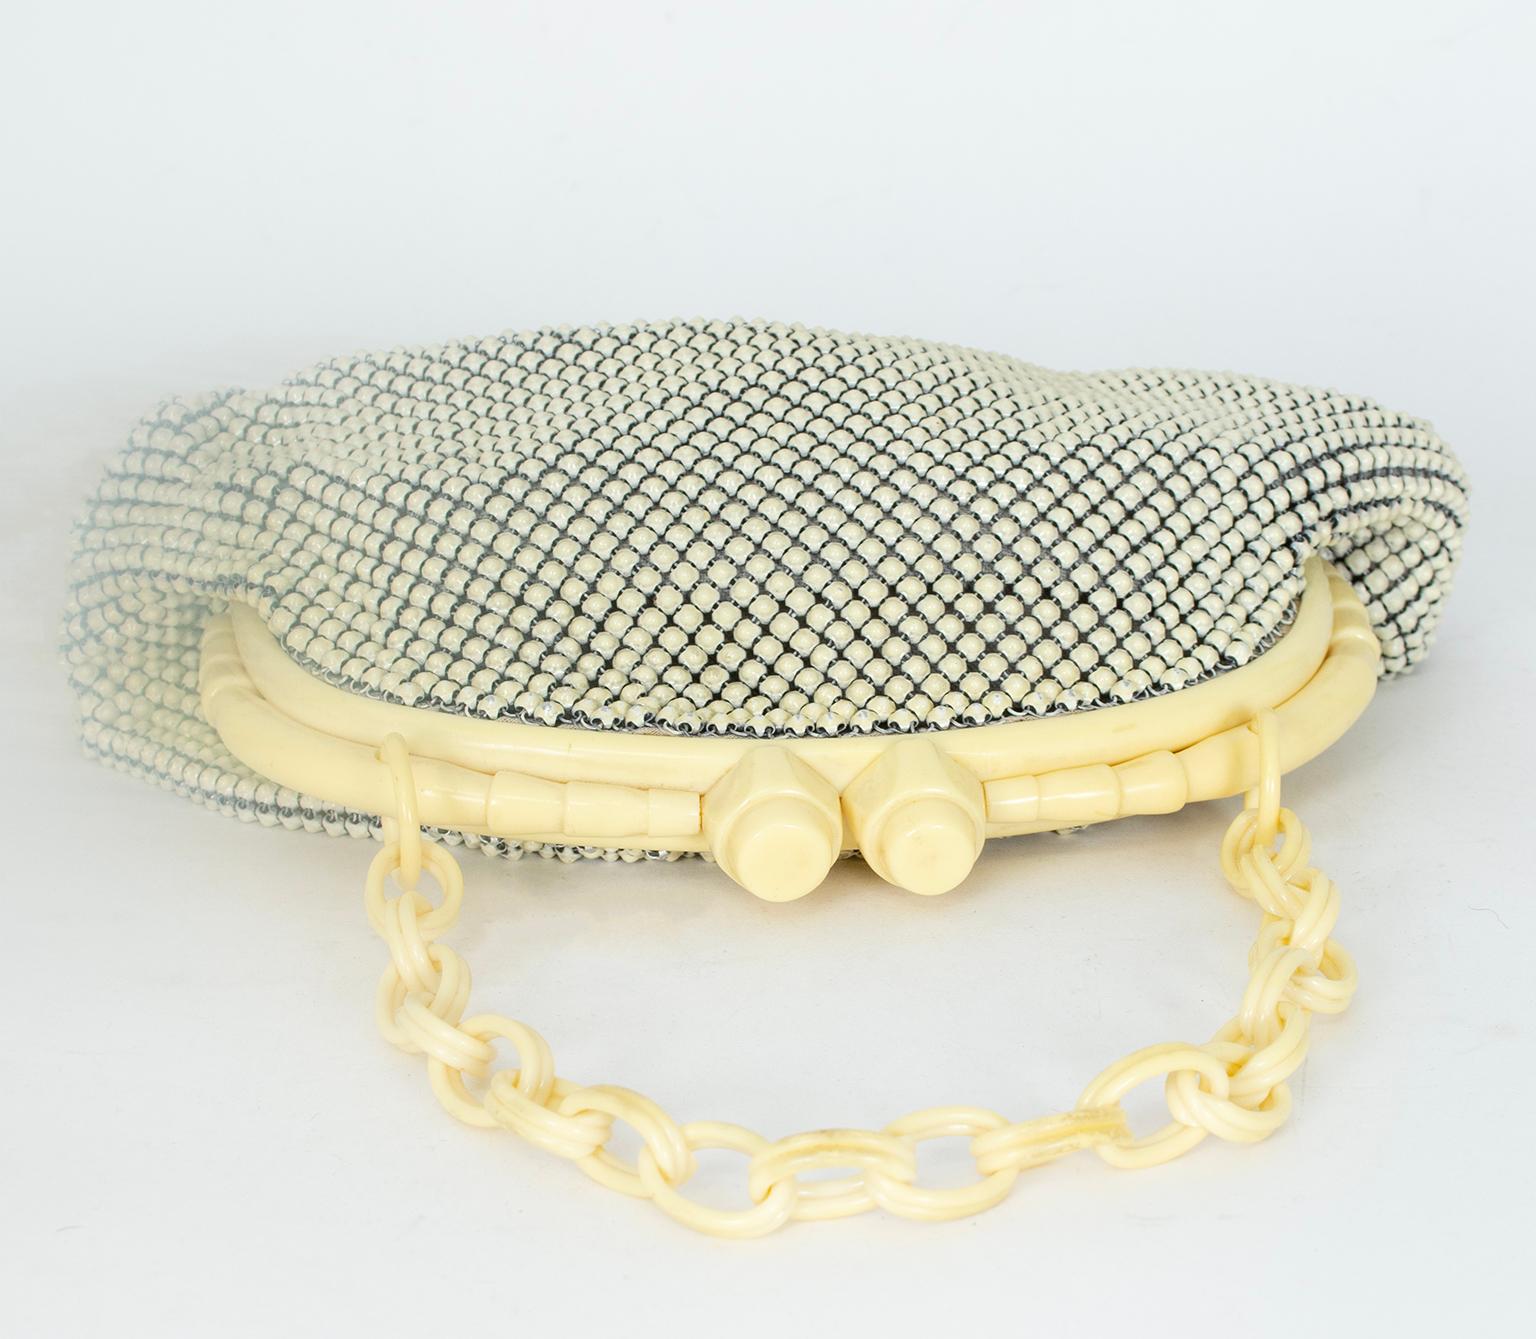 Whiting & Davis Ivory Enamel Mesh Handbag w Bakelite Chain and Frame, 1940s In Good Condition For Sale In Tucson, AZ